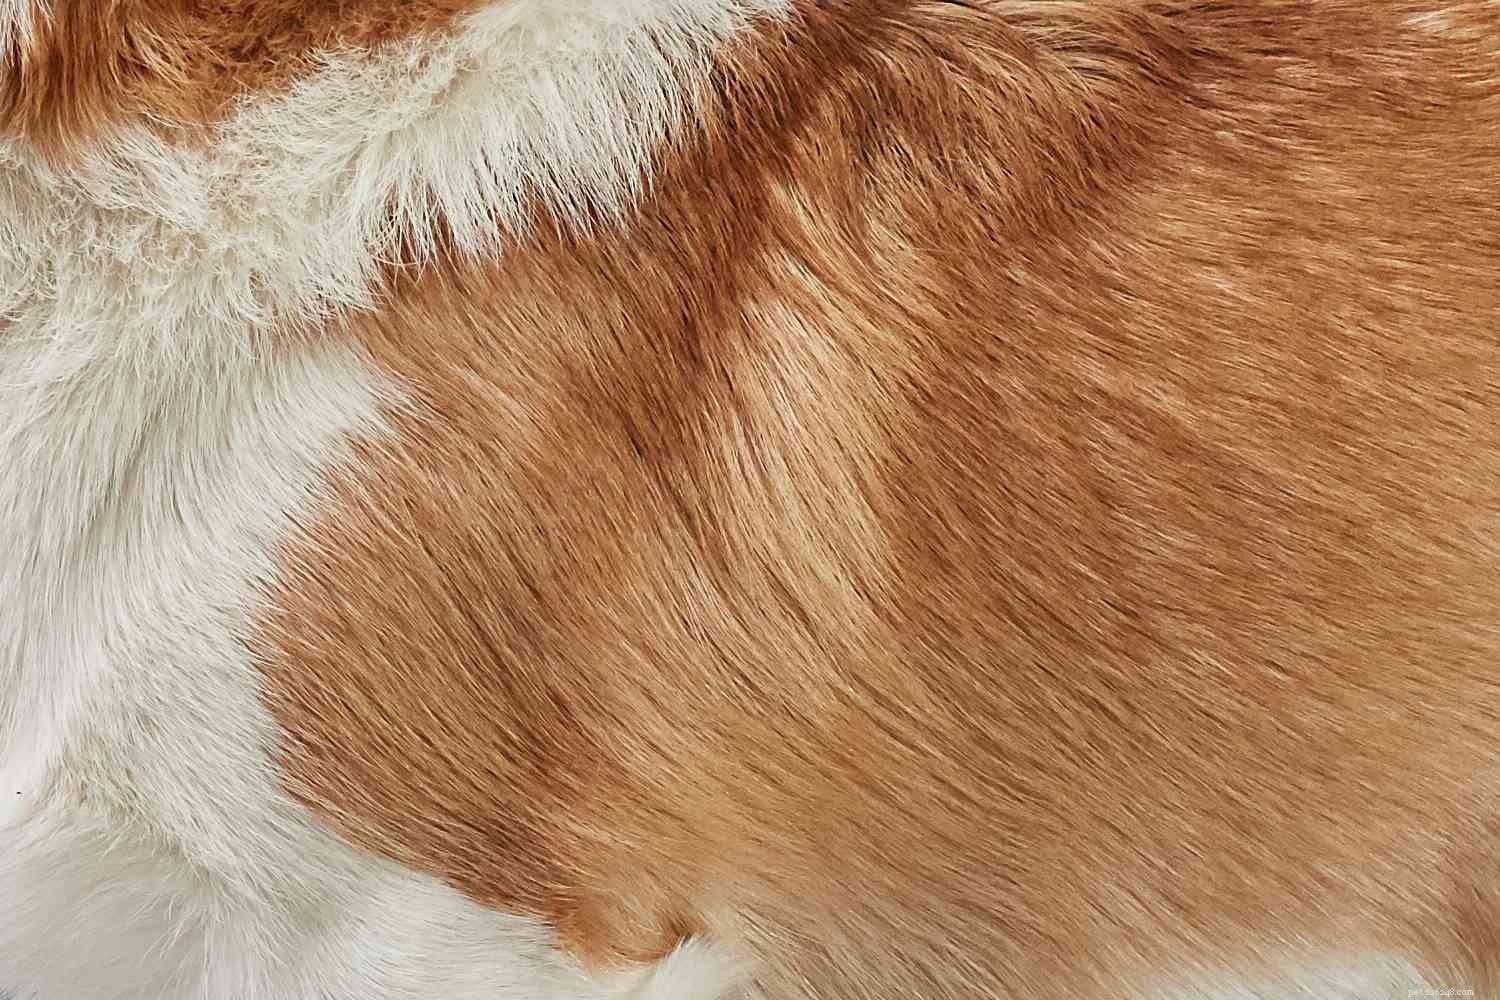 Вельш-корги пемброк:характеристики породы собак и уход за ними